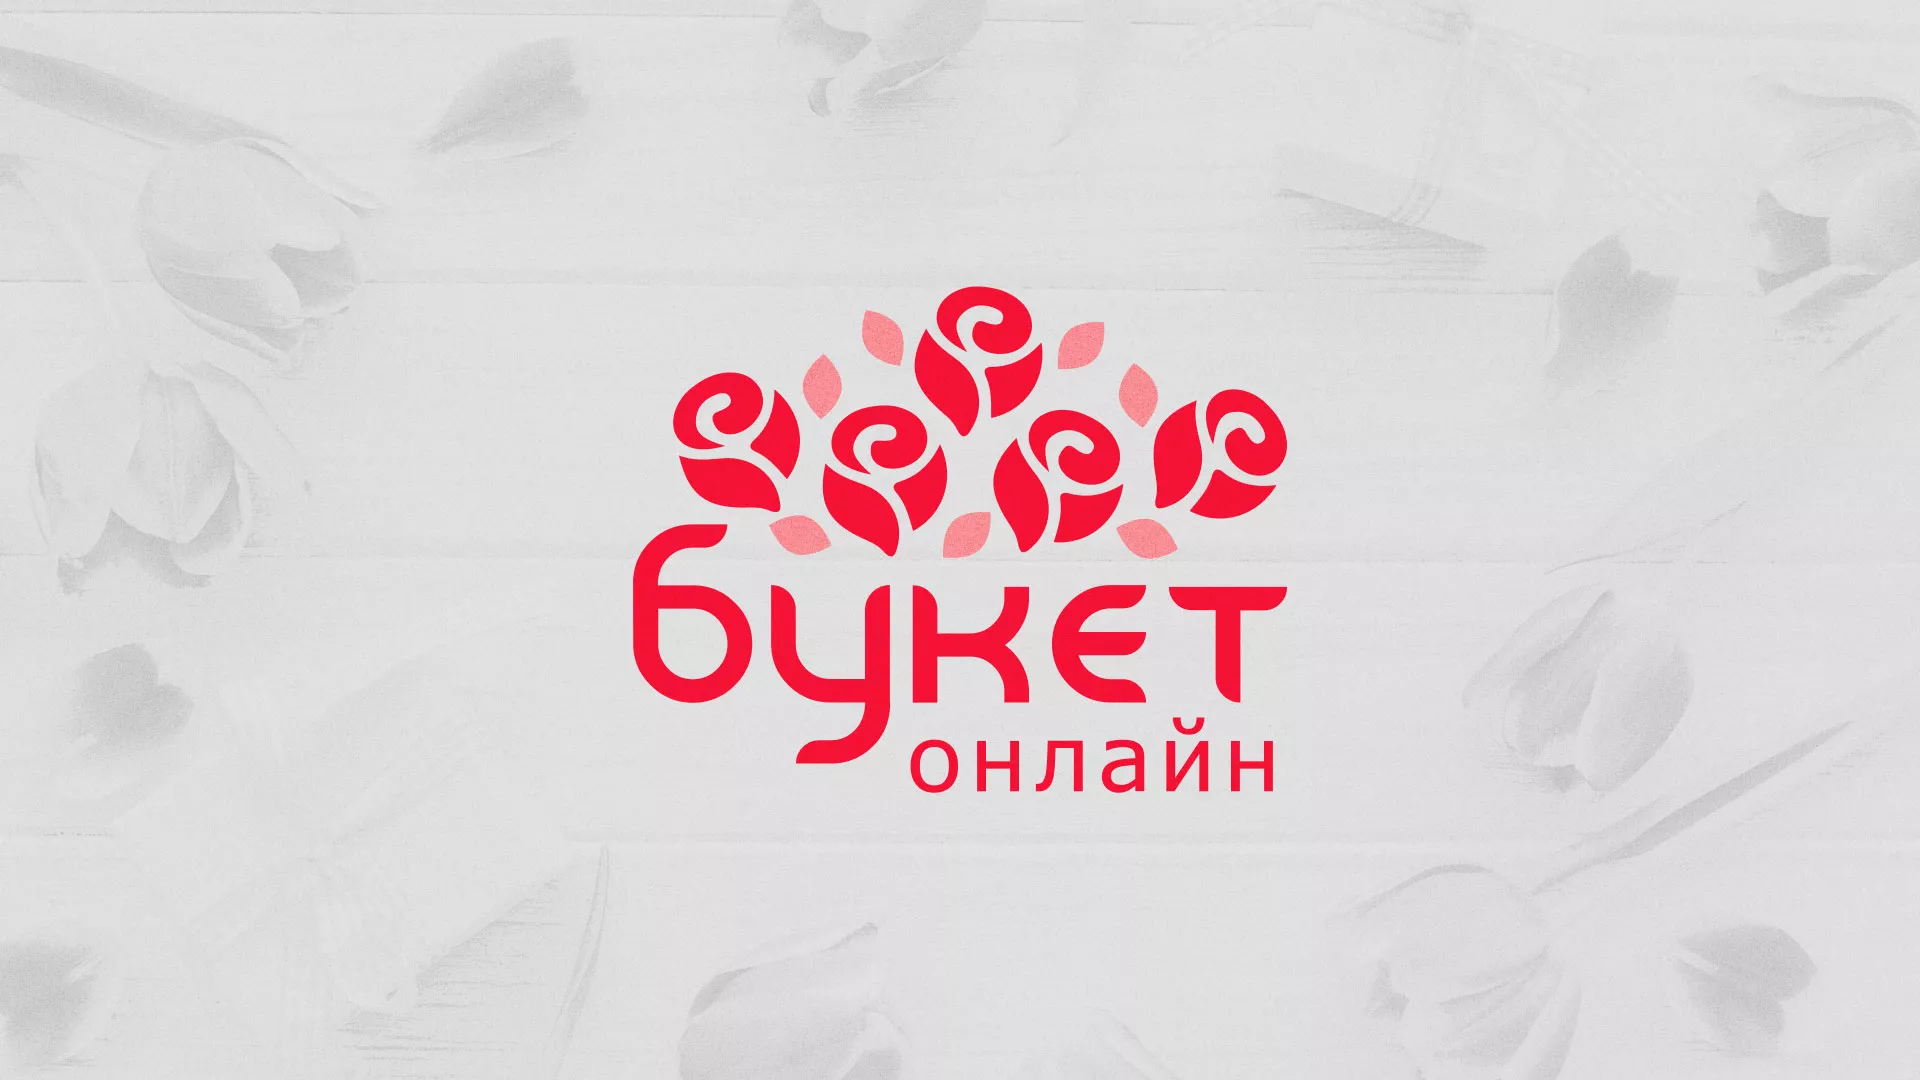 Создание интернет-магазина «Букет-онлайн» по цветам в Белорецке